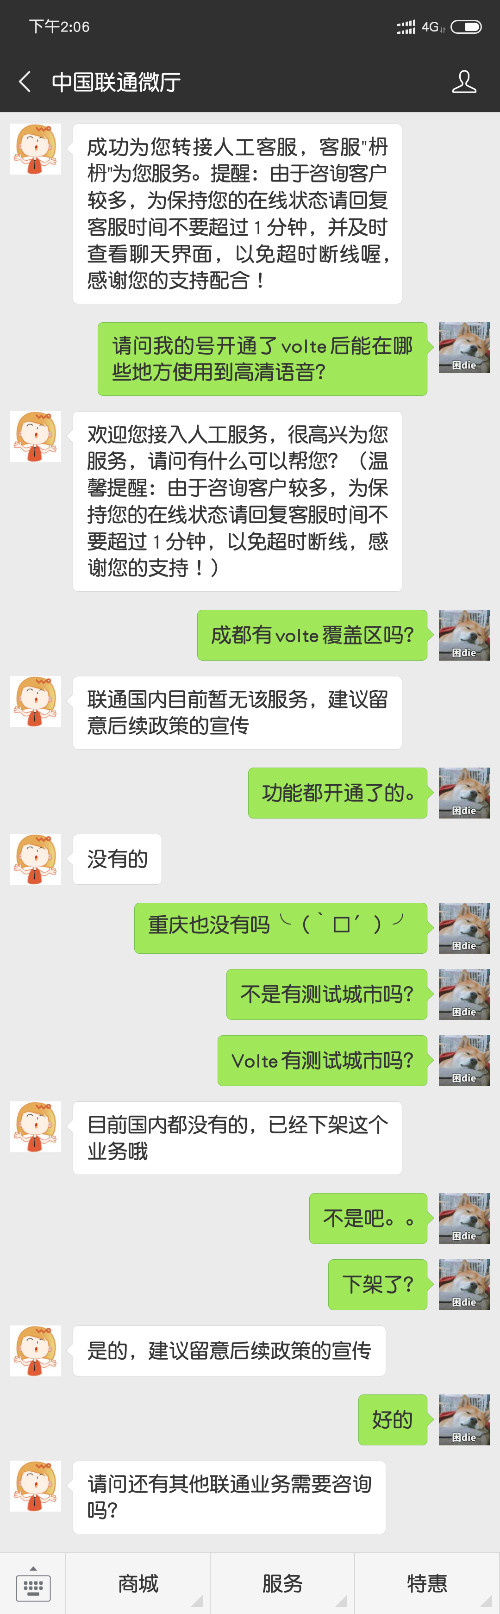 Screenshot_2018-12-12-14-06-18-663_com.tencent.mm.png